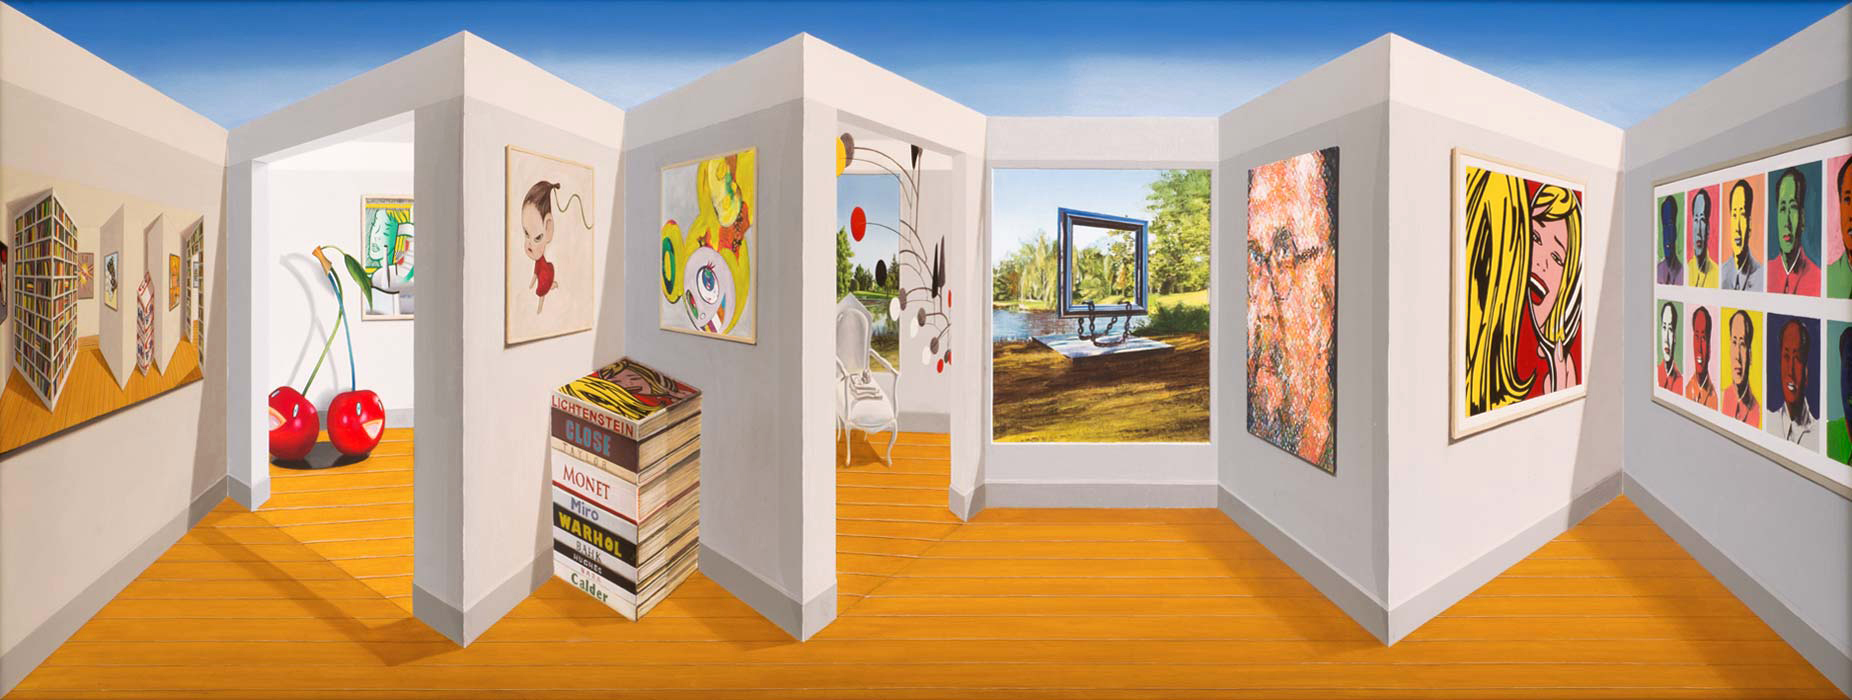 Jill, Scott, Miro and Monet <p>2014 | 67 X 144 X 20 cm / 26½ x 57 x 8 in</p>
